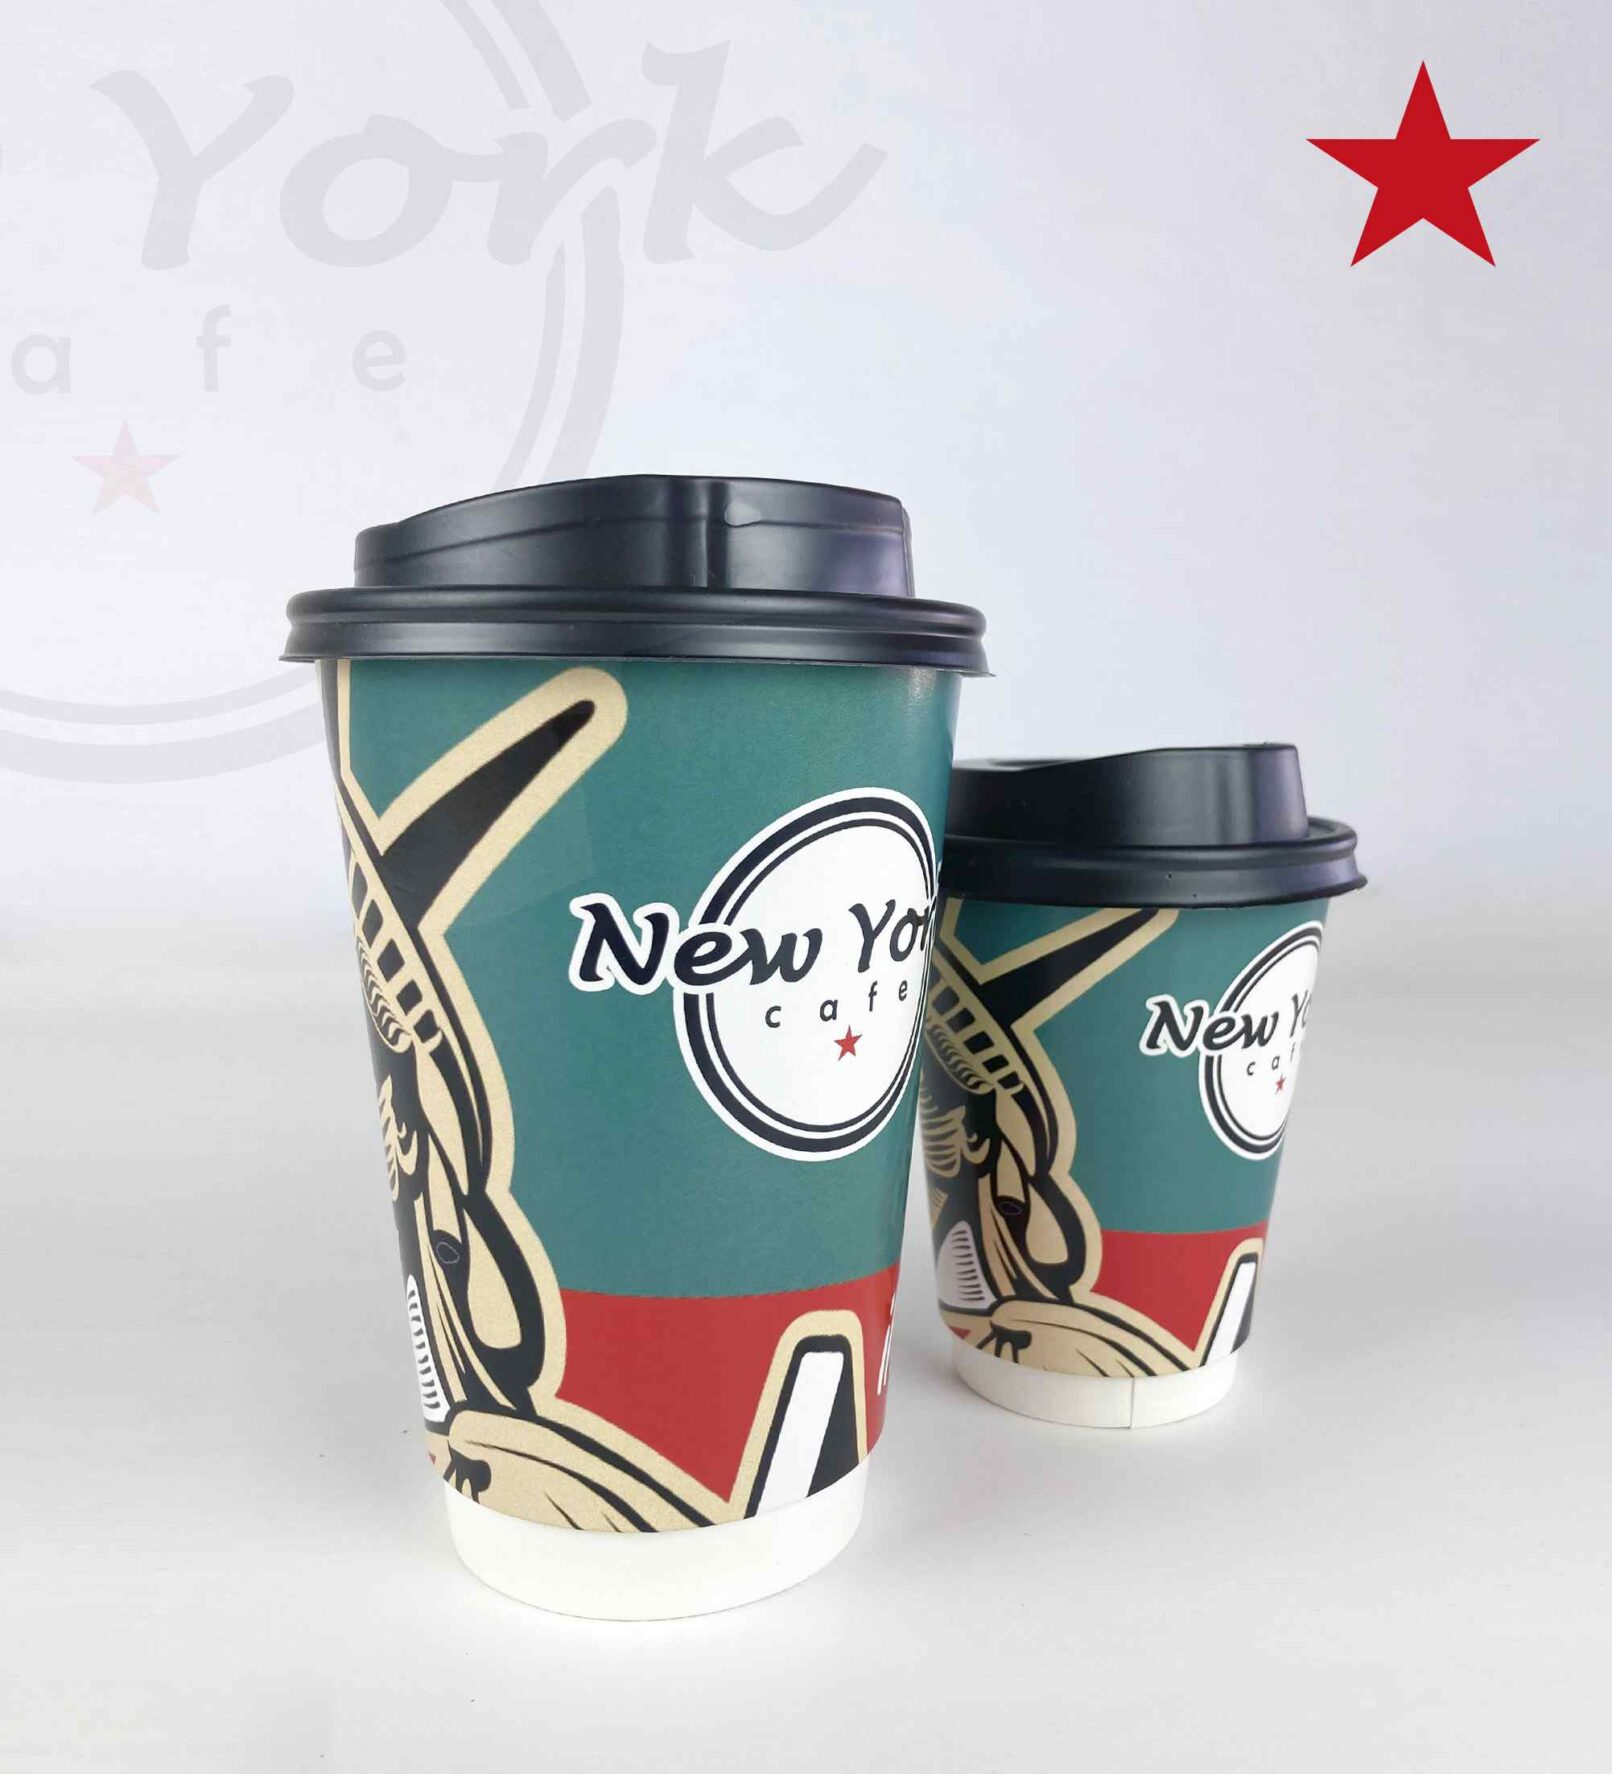 διπλότοιχο ποτήρι καφέ για take away New york cafe serres λιθογραφική